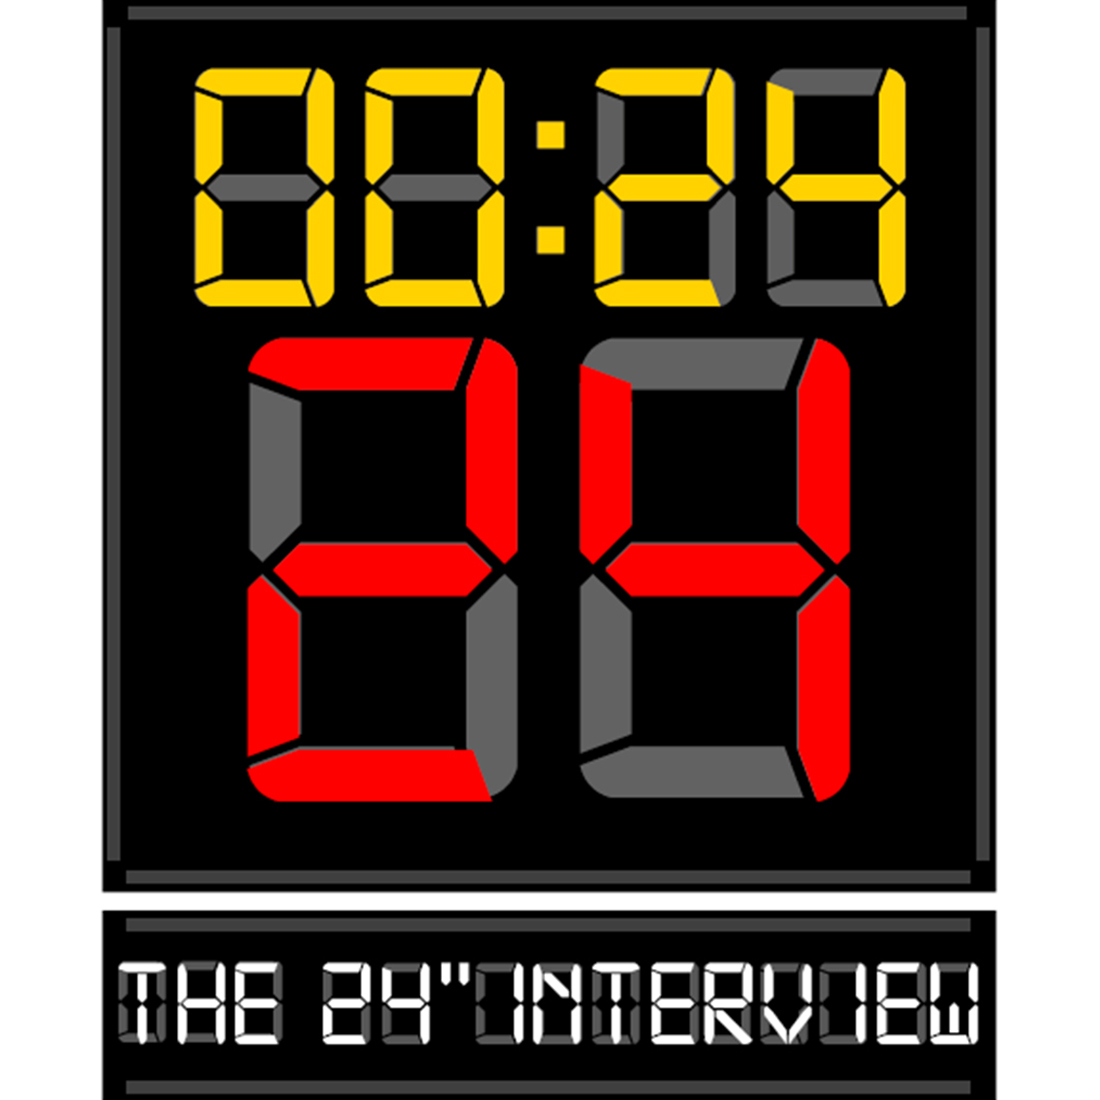 24 seconds interviews